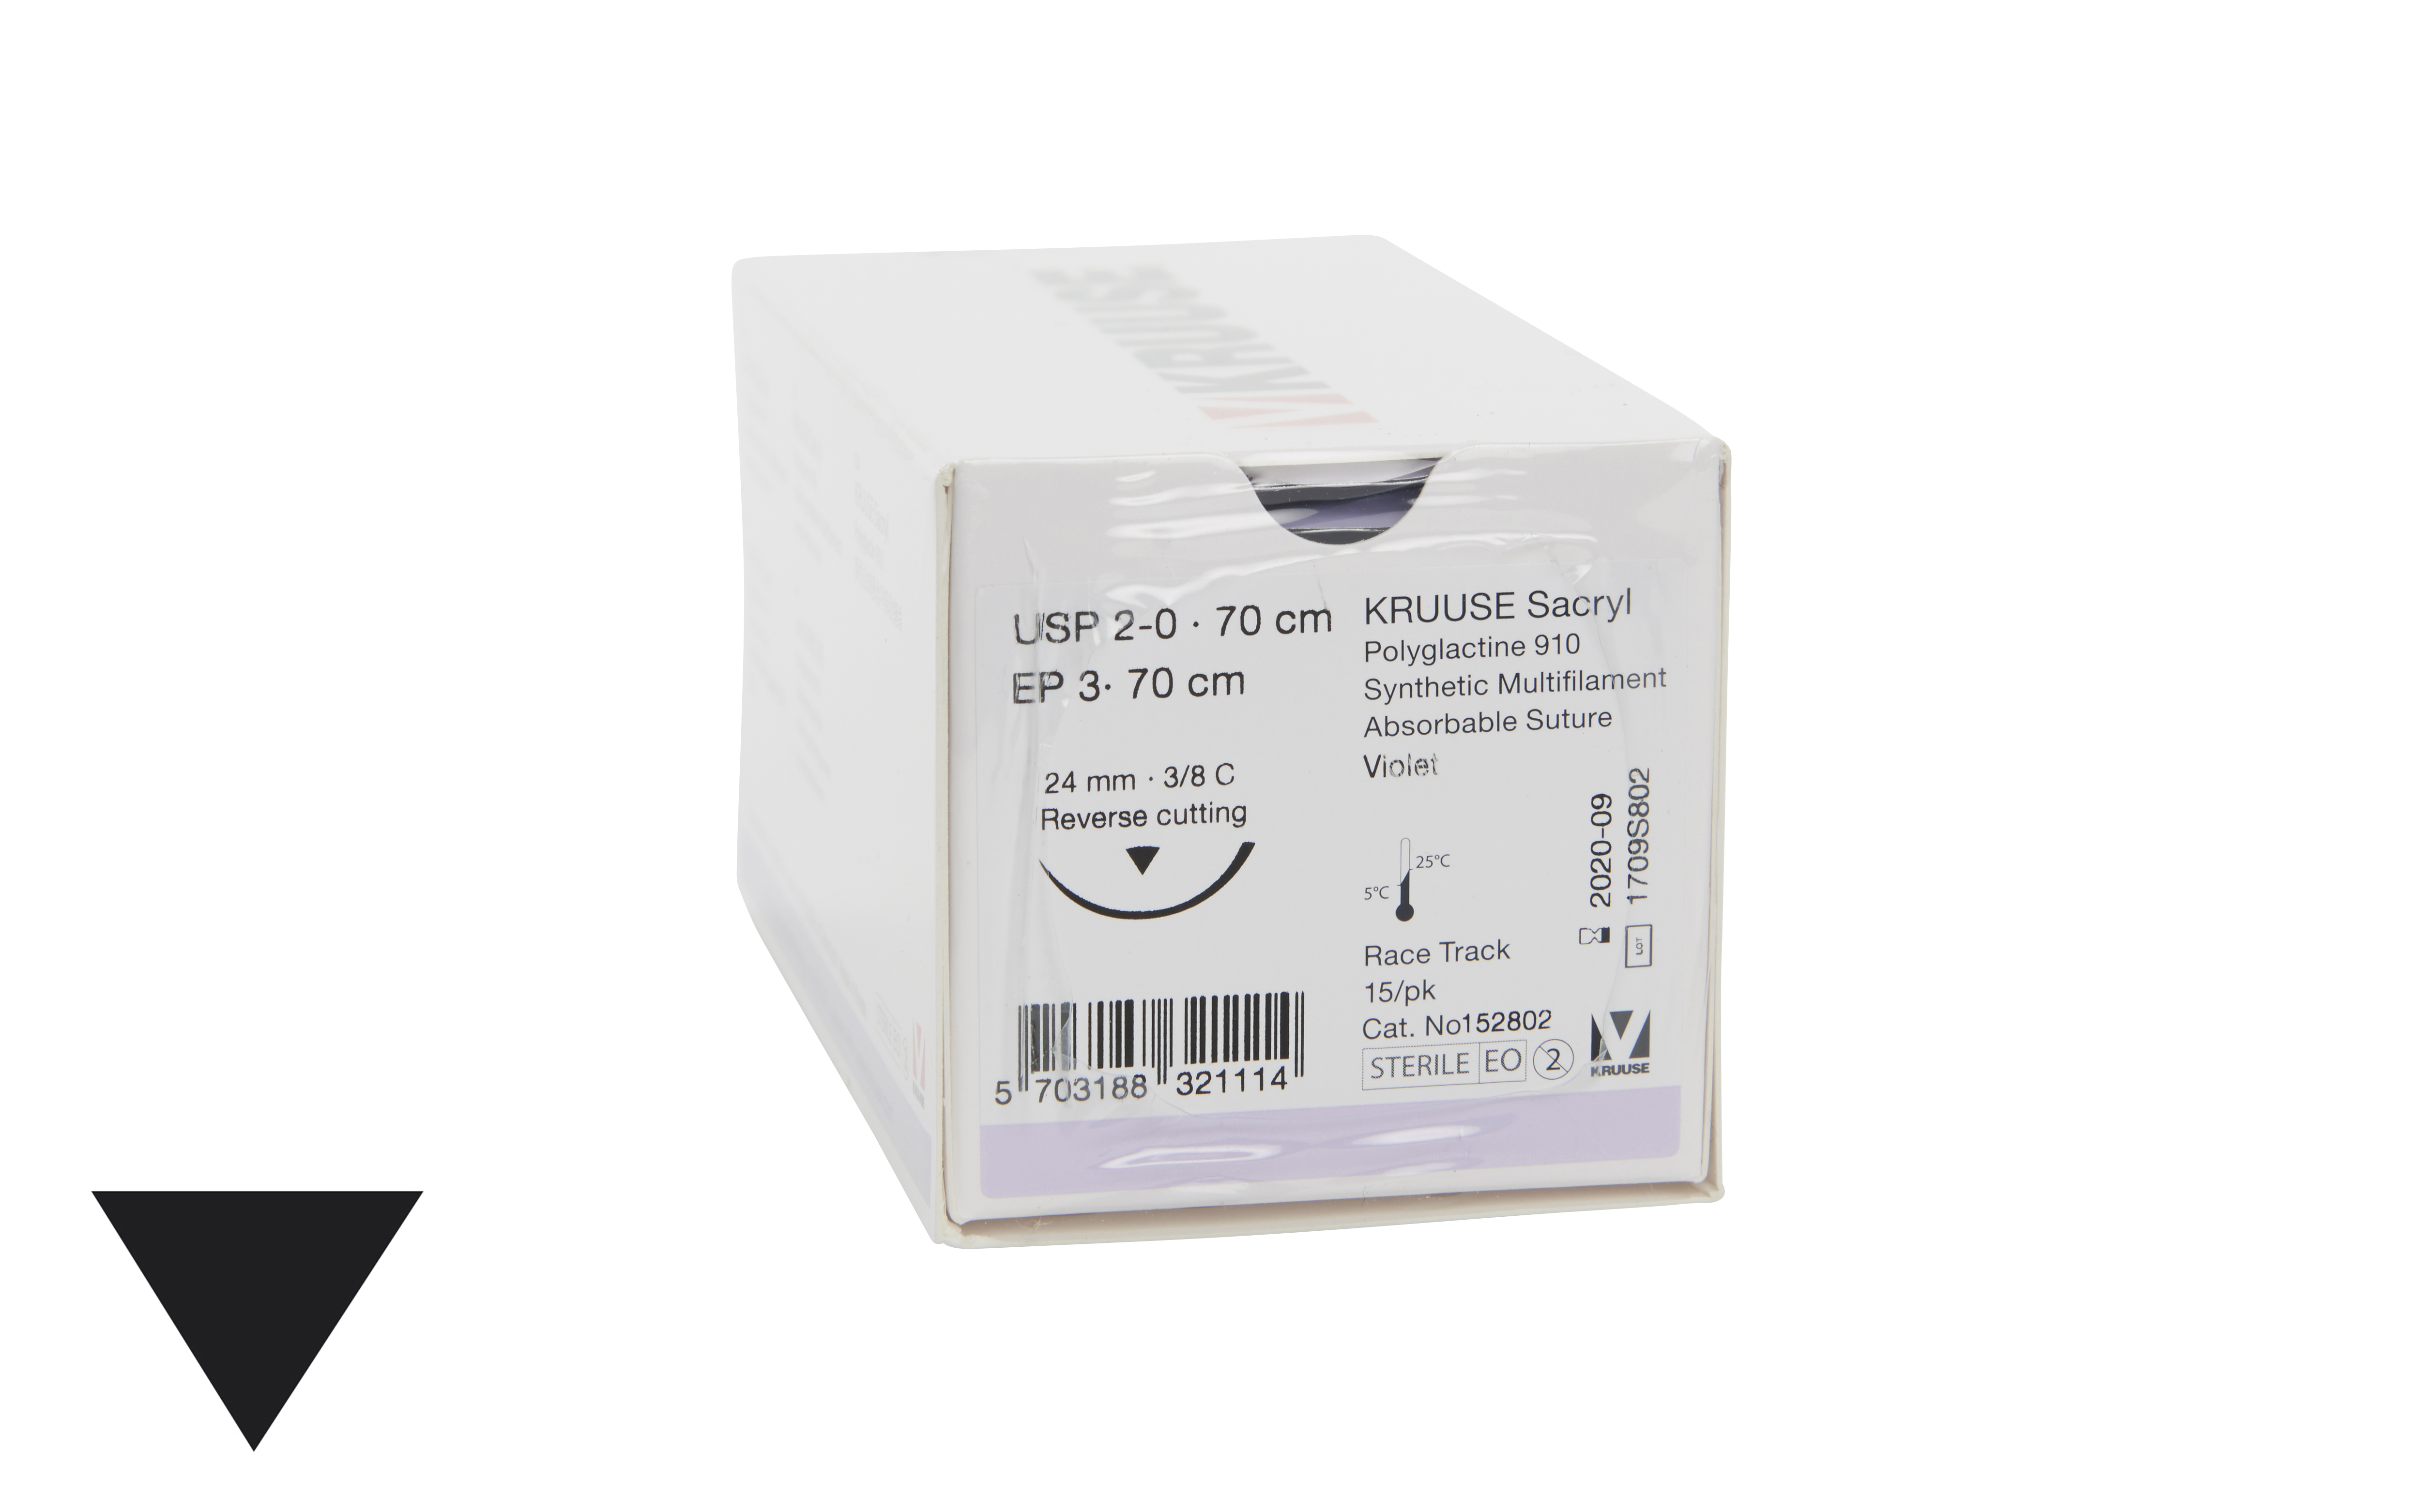 KRUUSE Sacryl Suture, USP 2-0, 70 cm, 24 mm needle, 3/8 C, RC, race-track, 15/pk